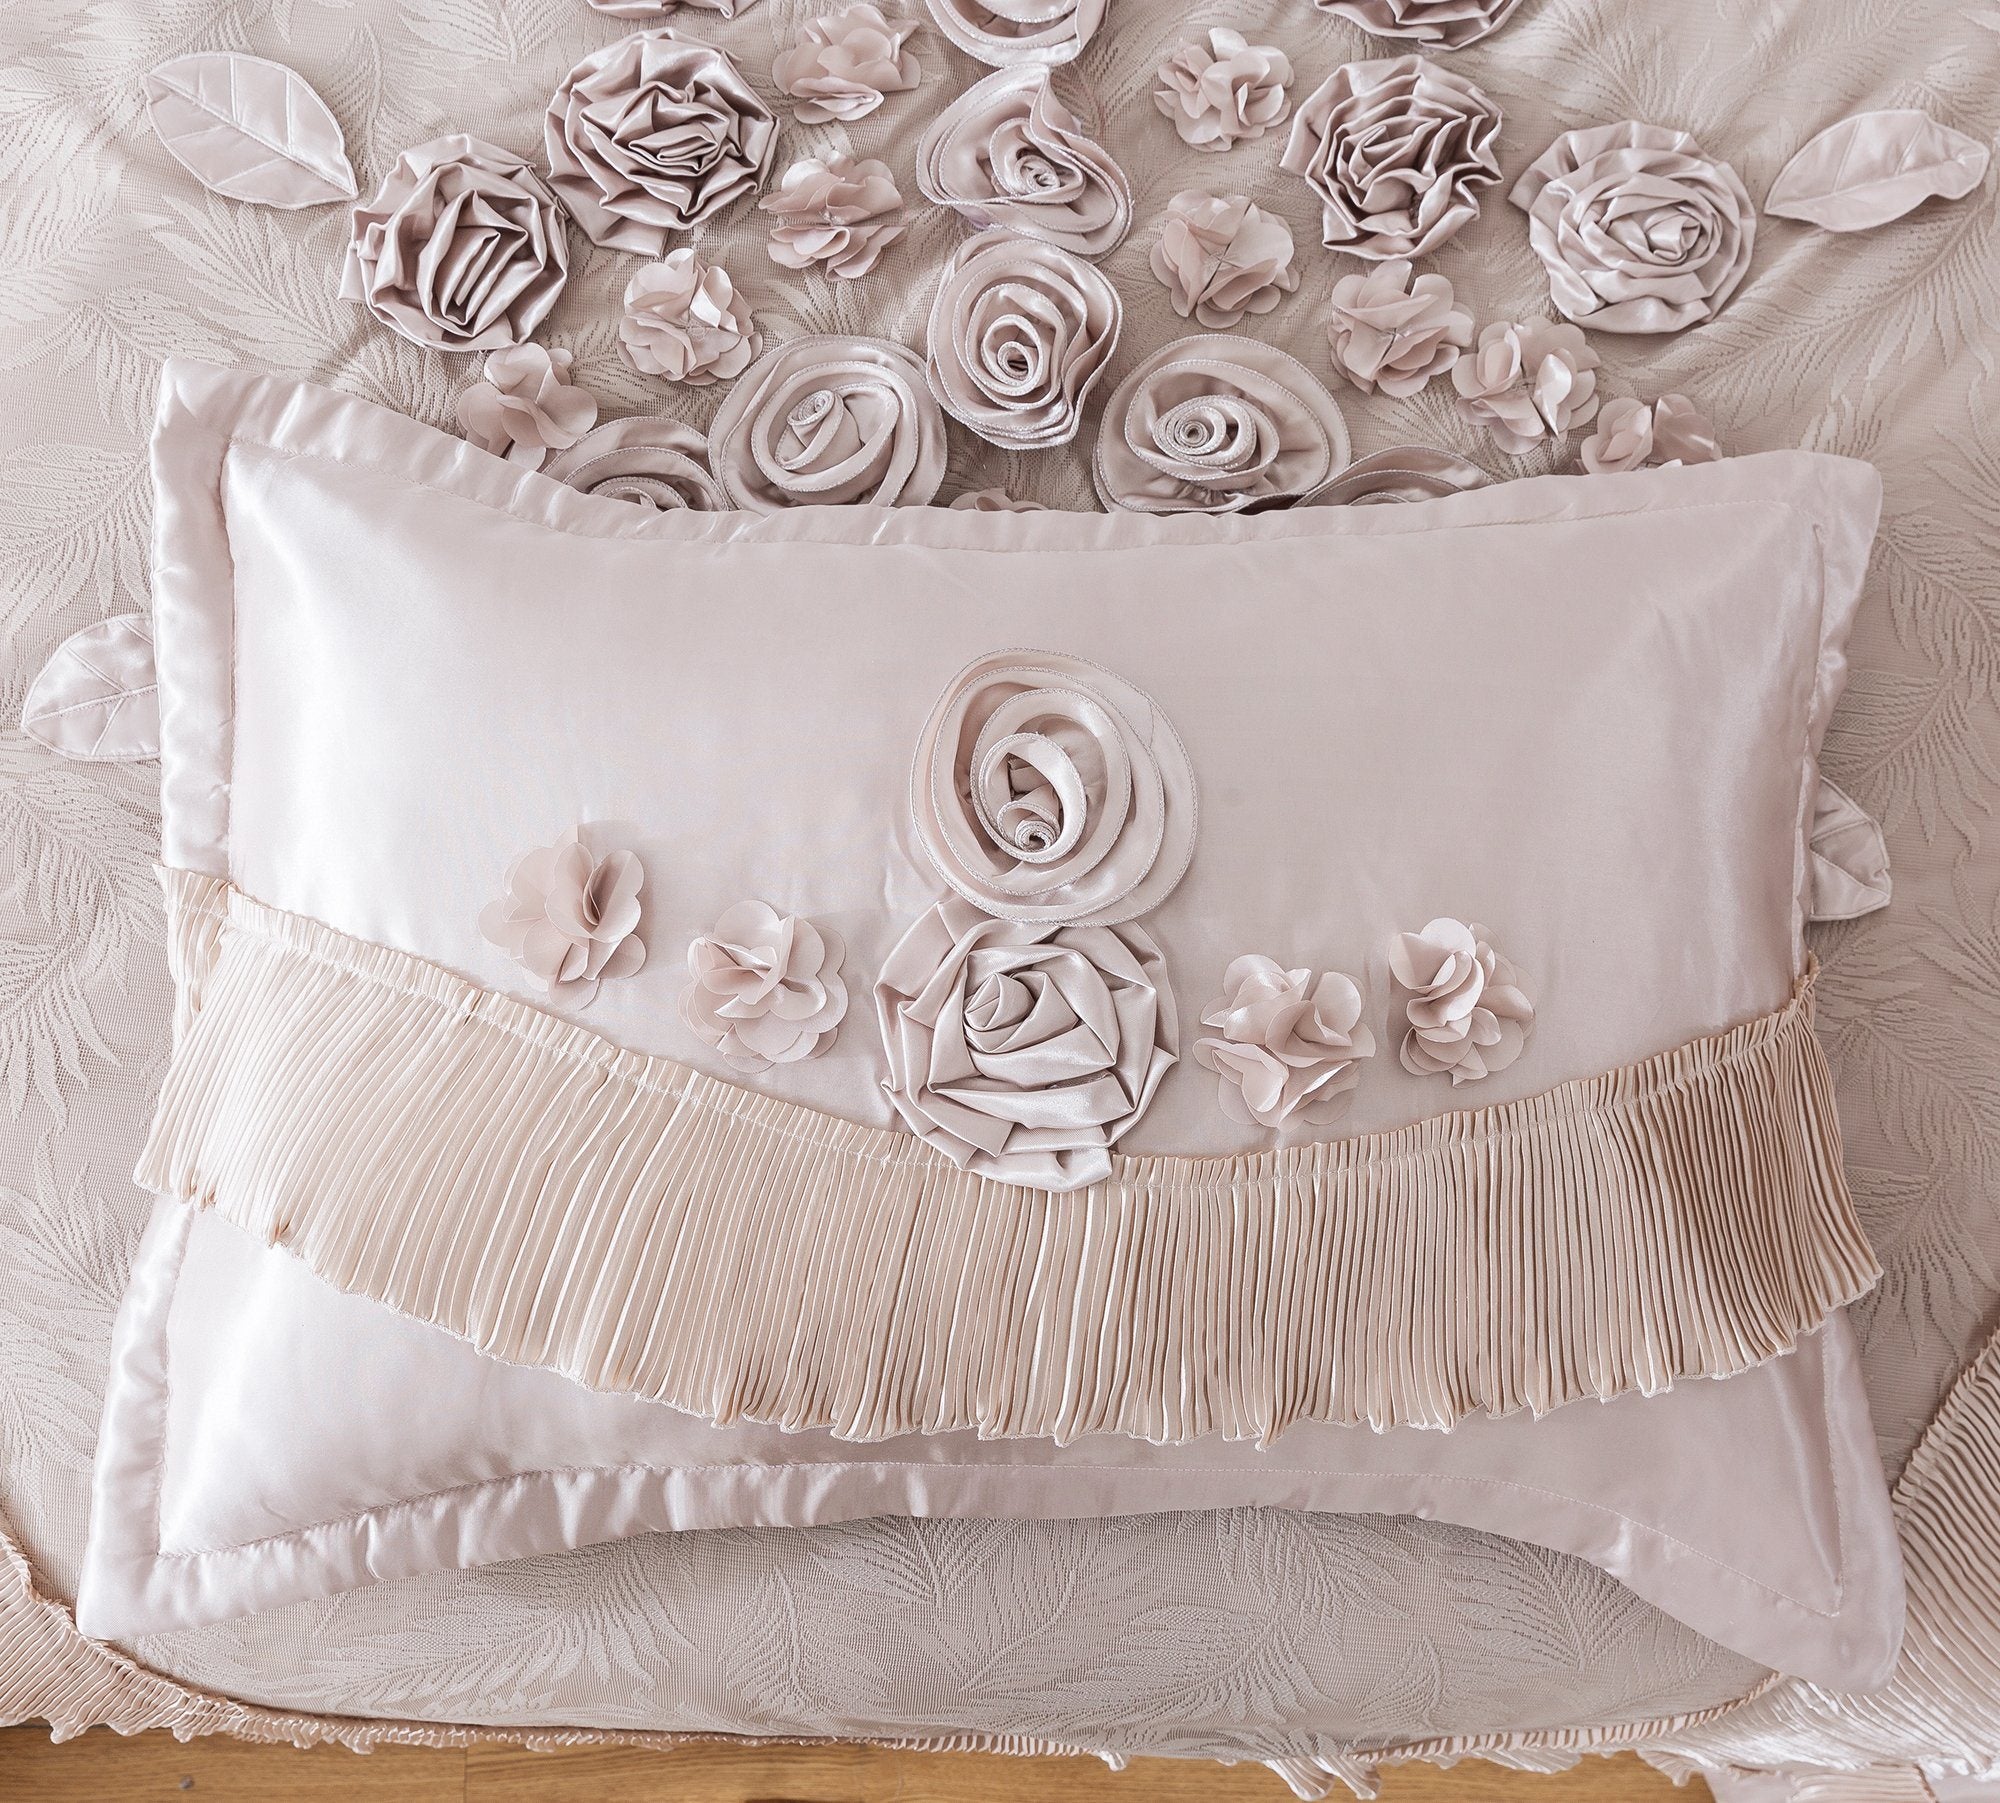 Tache Satin Floral Lace Ruffle Crème Beige Sweet Victorian Luxurious Comforter Set (MZ002C) - Tache Home Fashion